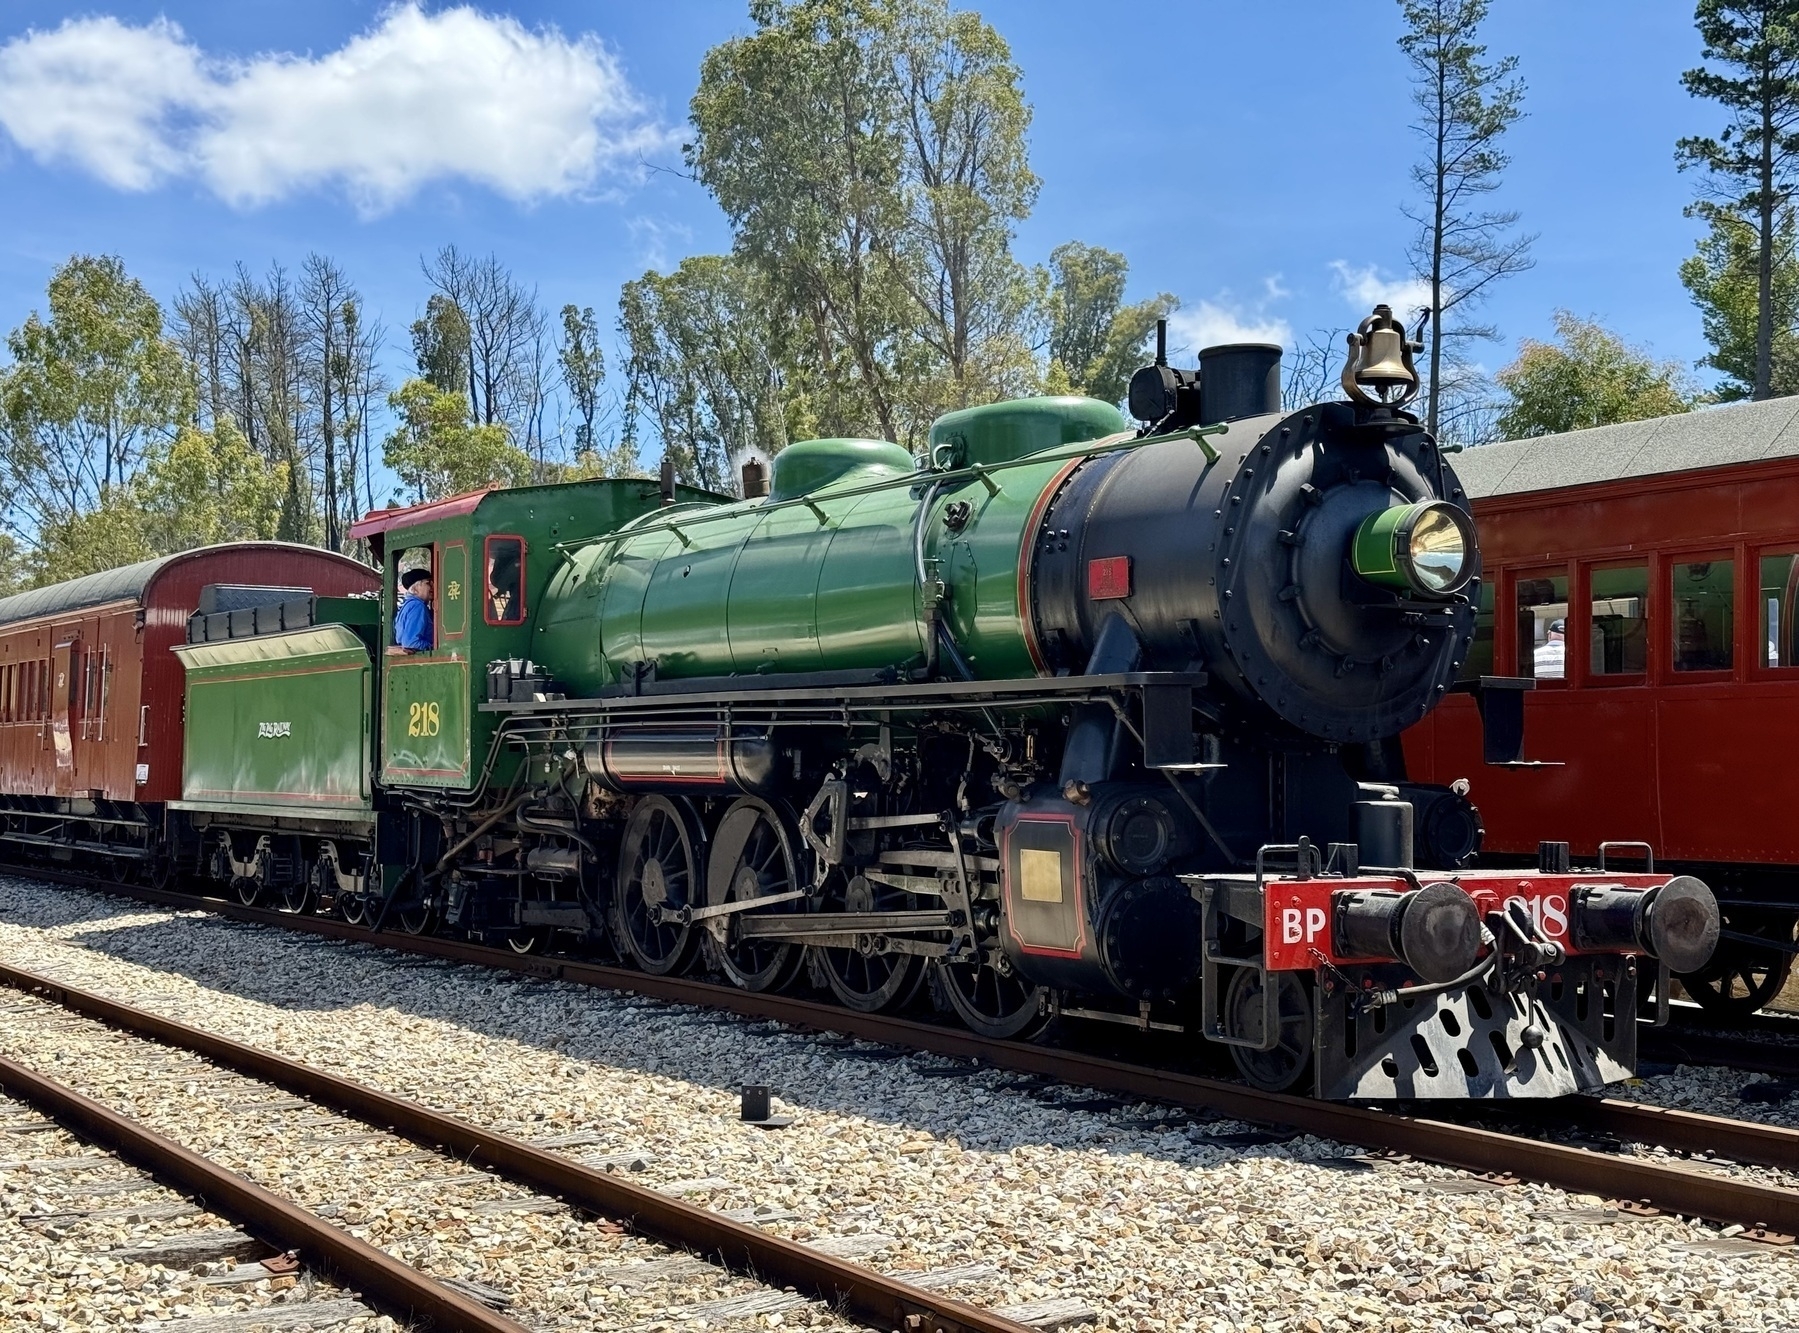 A green steam locomotive.